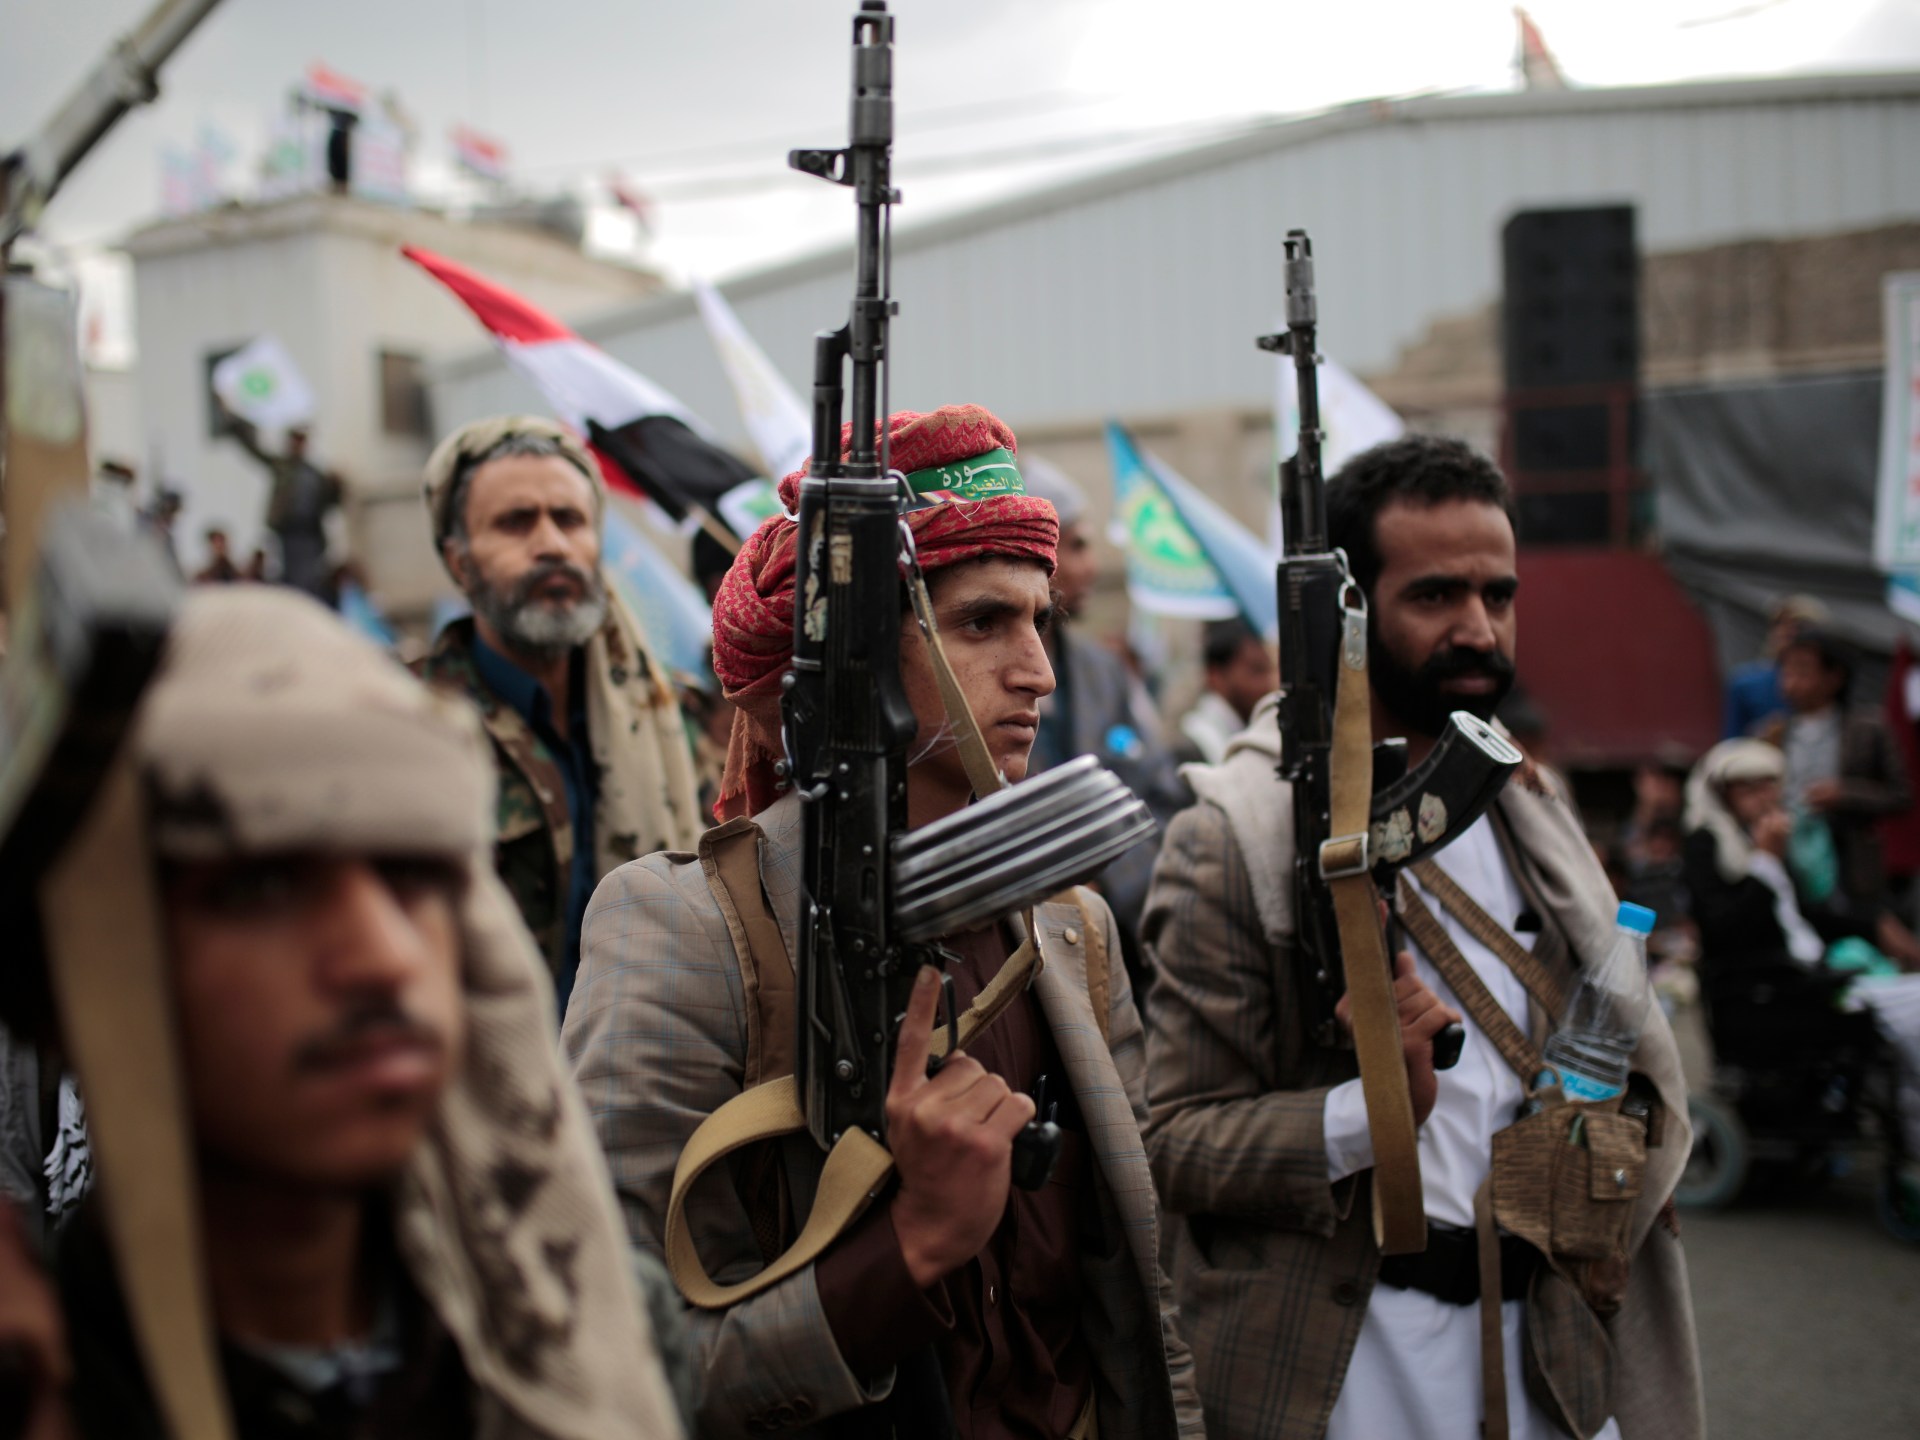 يغادر الحوثيون المملكة العربية السعودية بعد محادثات حول اتفاق وقف إطلاق النار المحتمل في اليمن  اخبار الحوثي